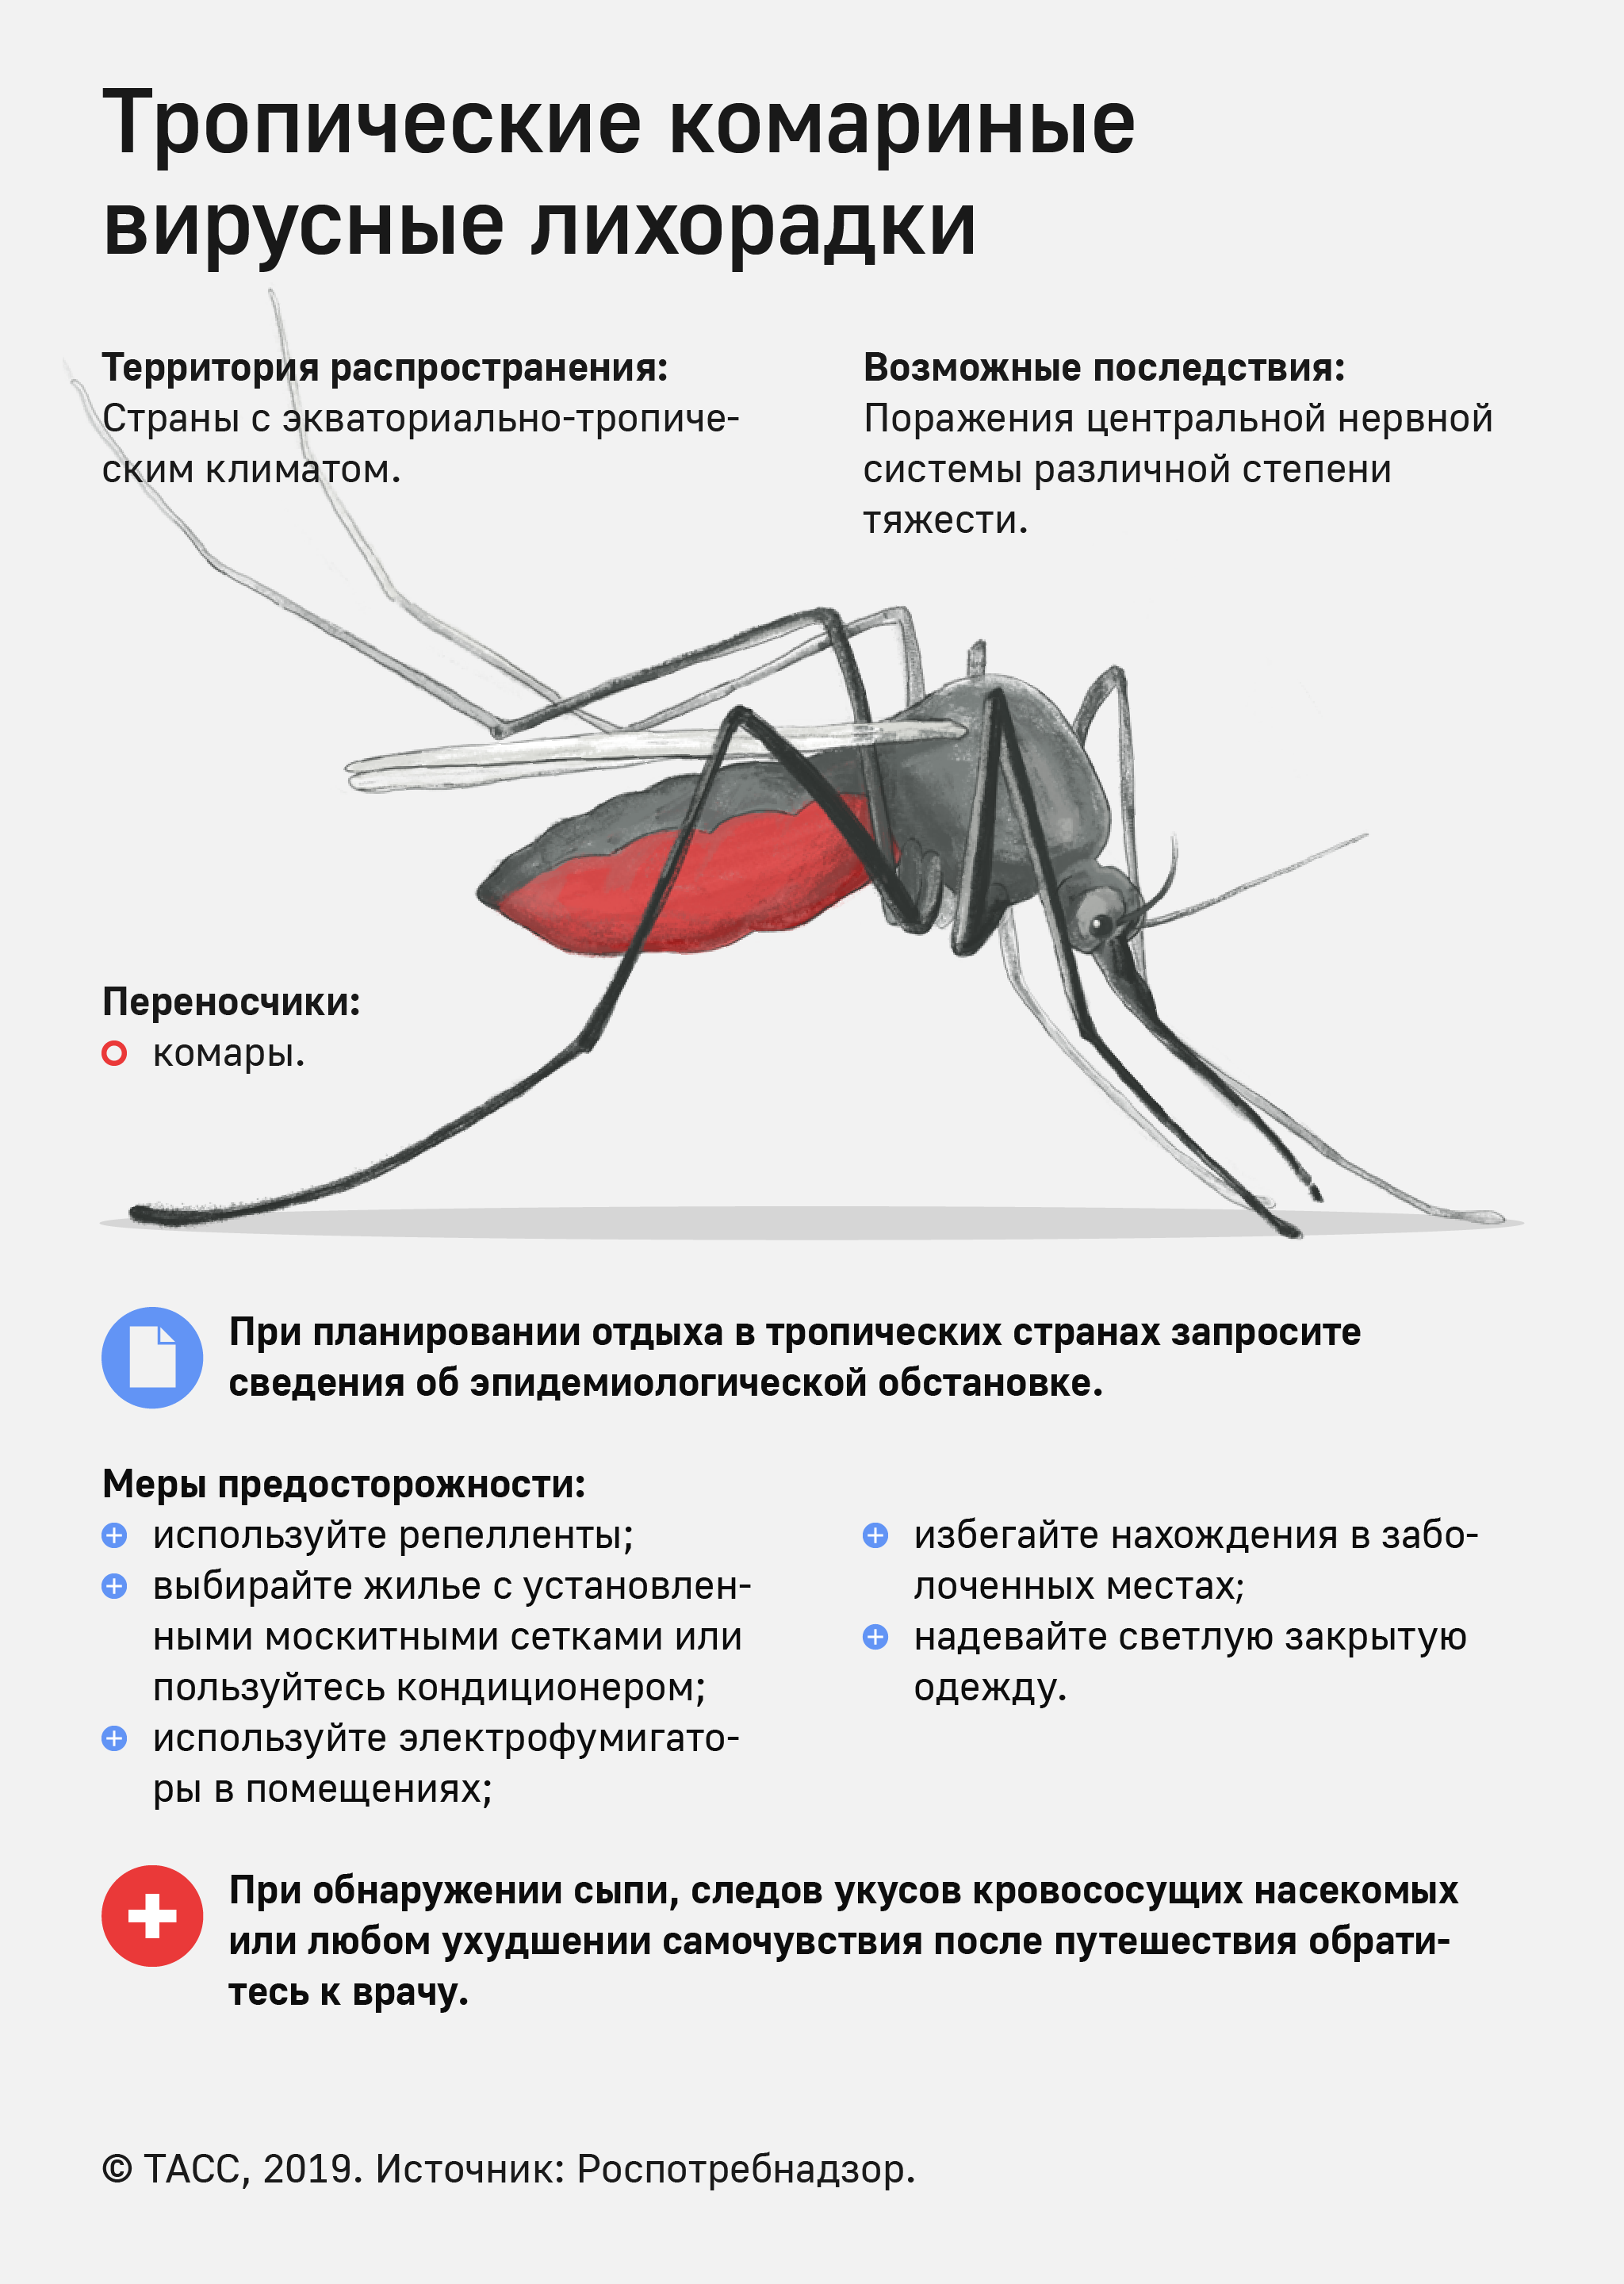 Инфекции передающиеся через укусы кровососущих насекомых. Малярийный комар болезнь. Профилактика от малярийного комара. Памятка по профилактике малярии.